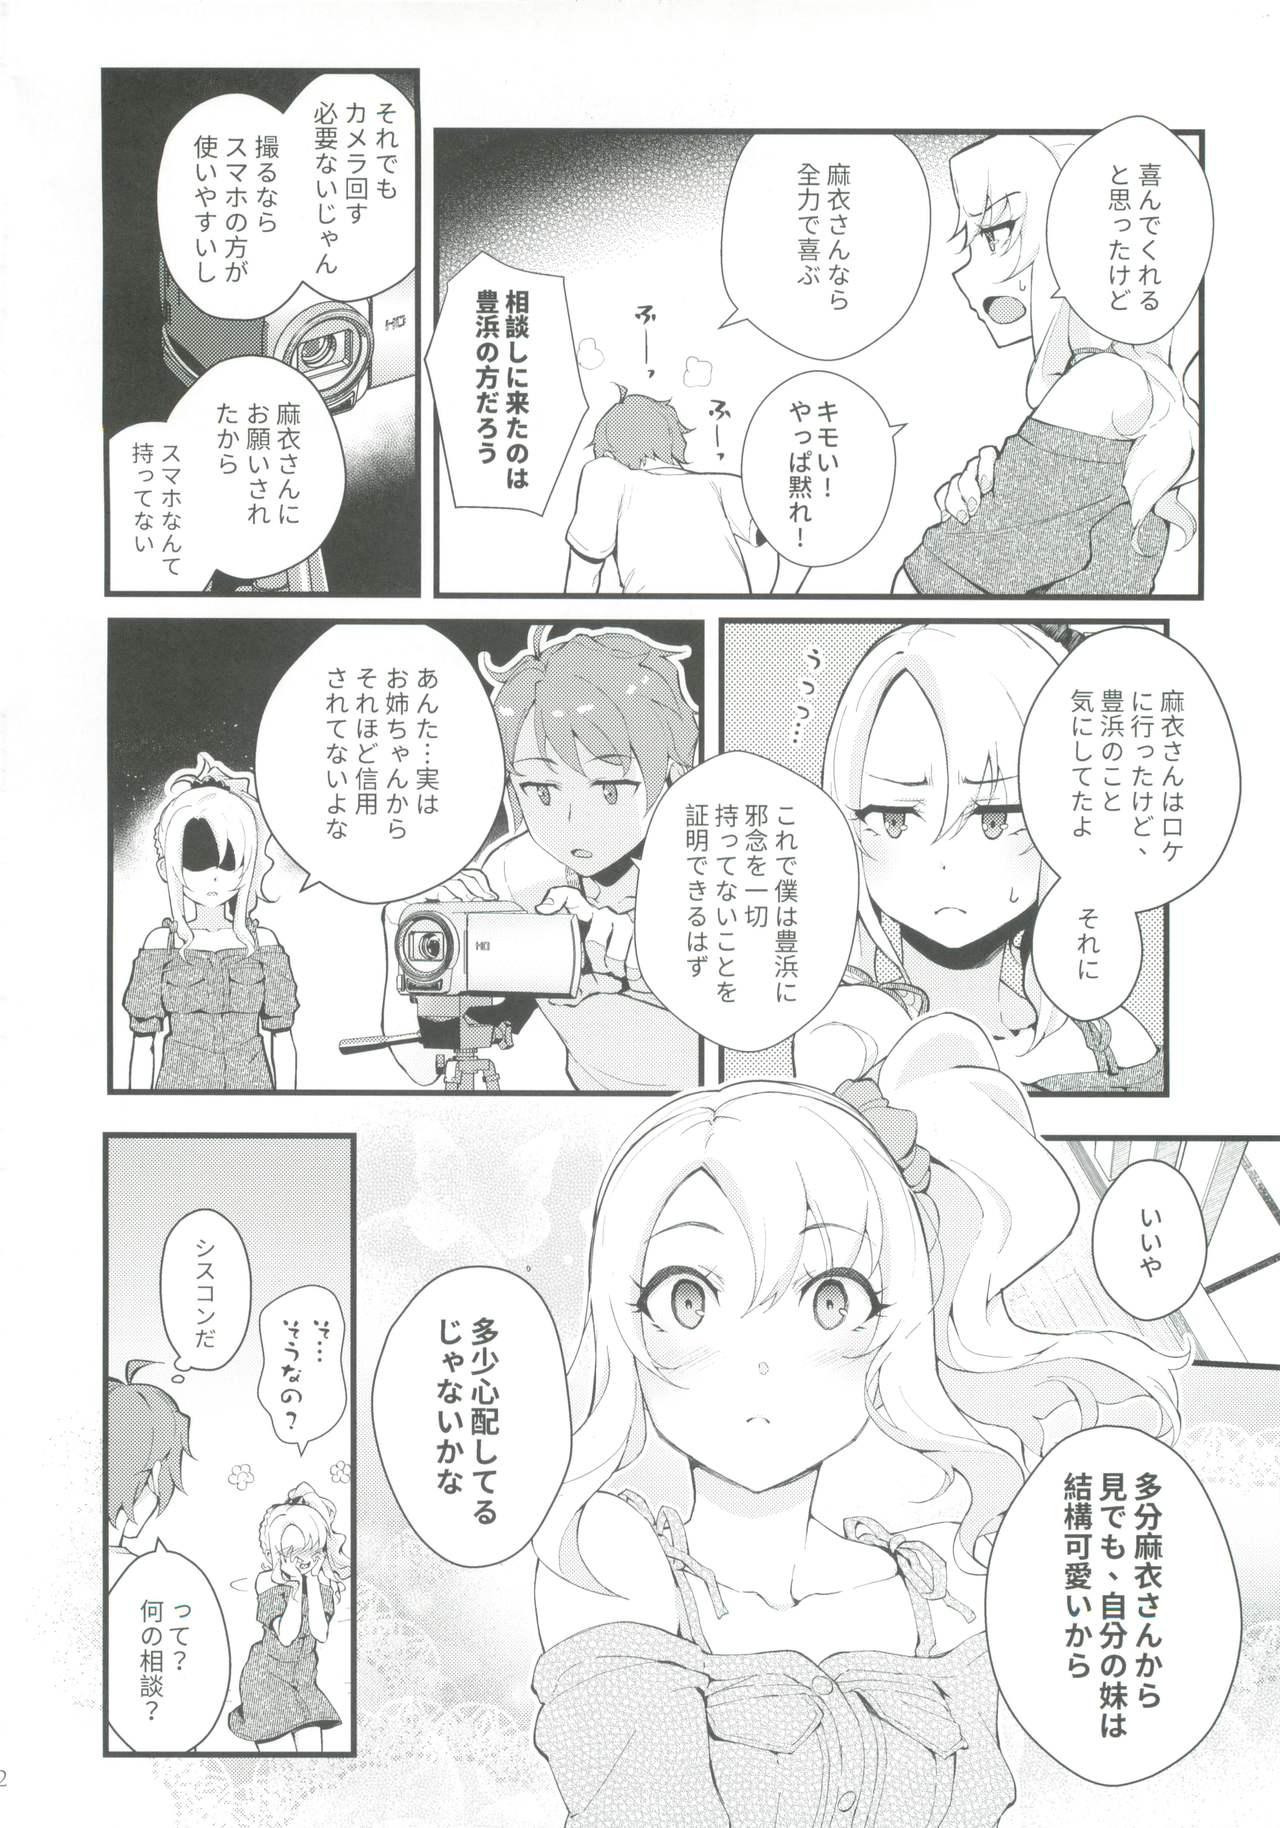 Petite Teen Sisters Panic - Seishun buta yarou wa bunny girl senpai no yume o minai Tats - Page 3